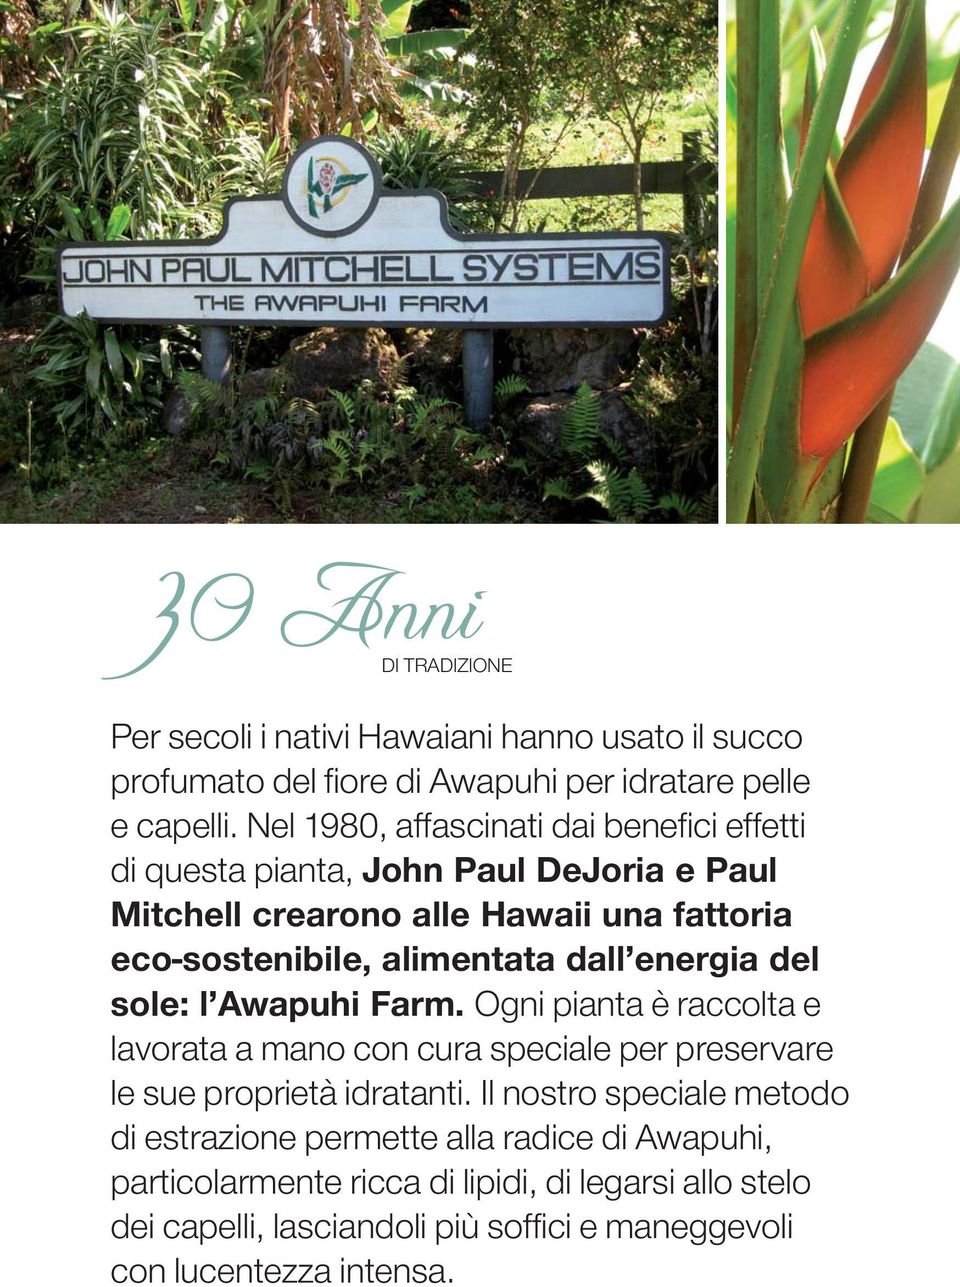 dall energia del sole: l Awapuhi Farm. Ogni pianta è raccolta e lavorata a mano con cura speciale per preservare le sue proprietà idratanti.